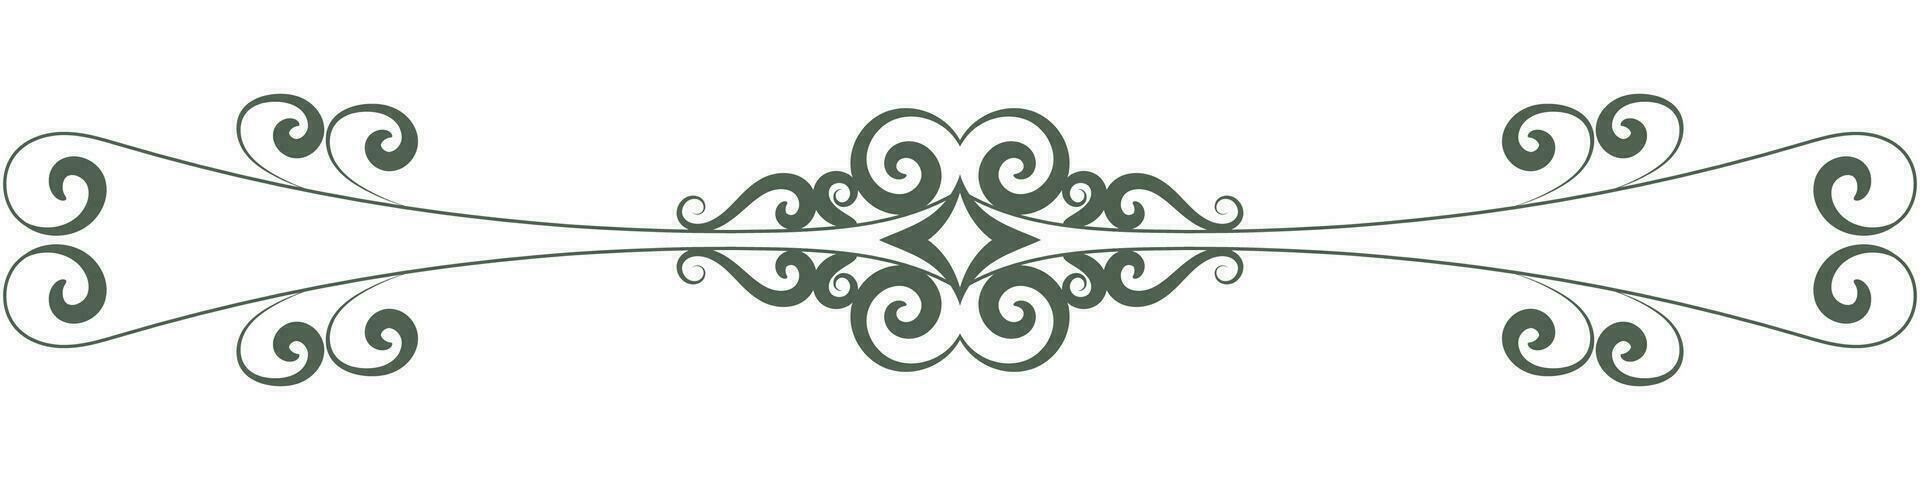 verde Clásico líneas barroco Desplazarse flor divisor Clásico estilo para decorando tarjetas vector